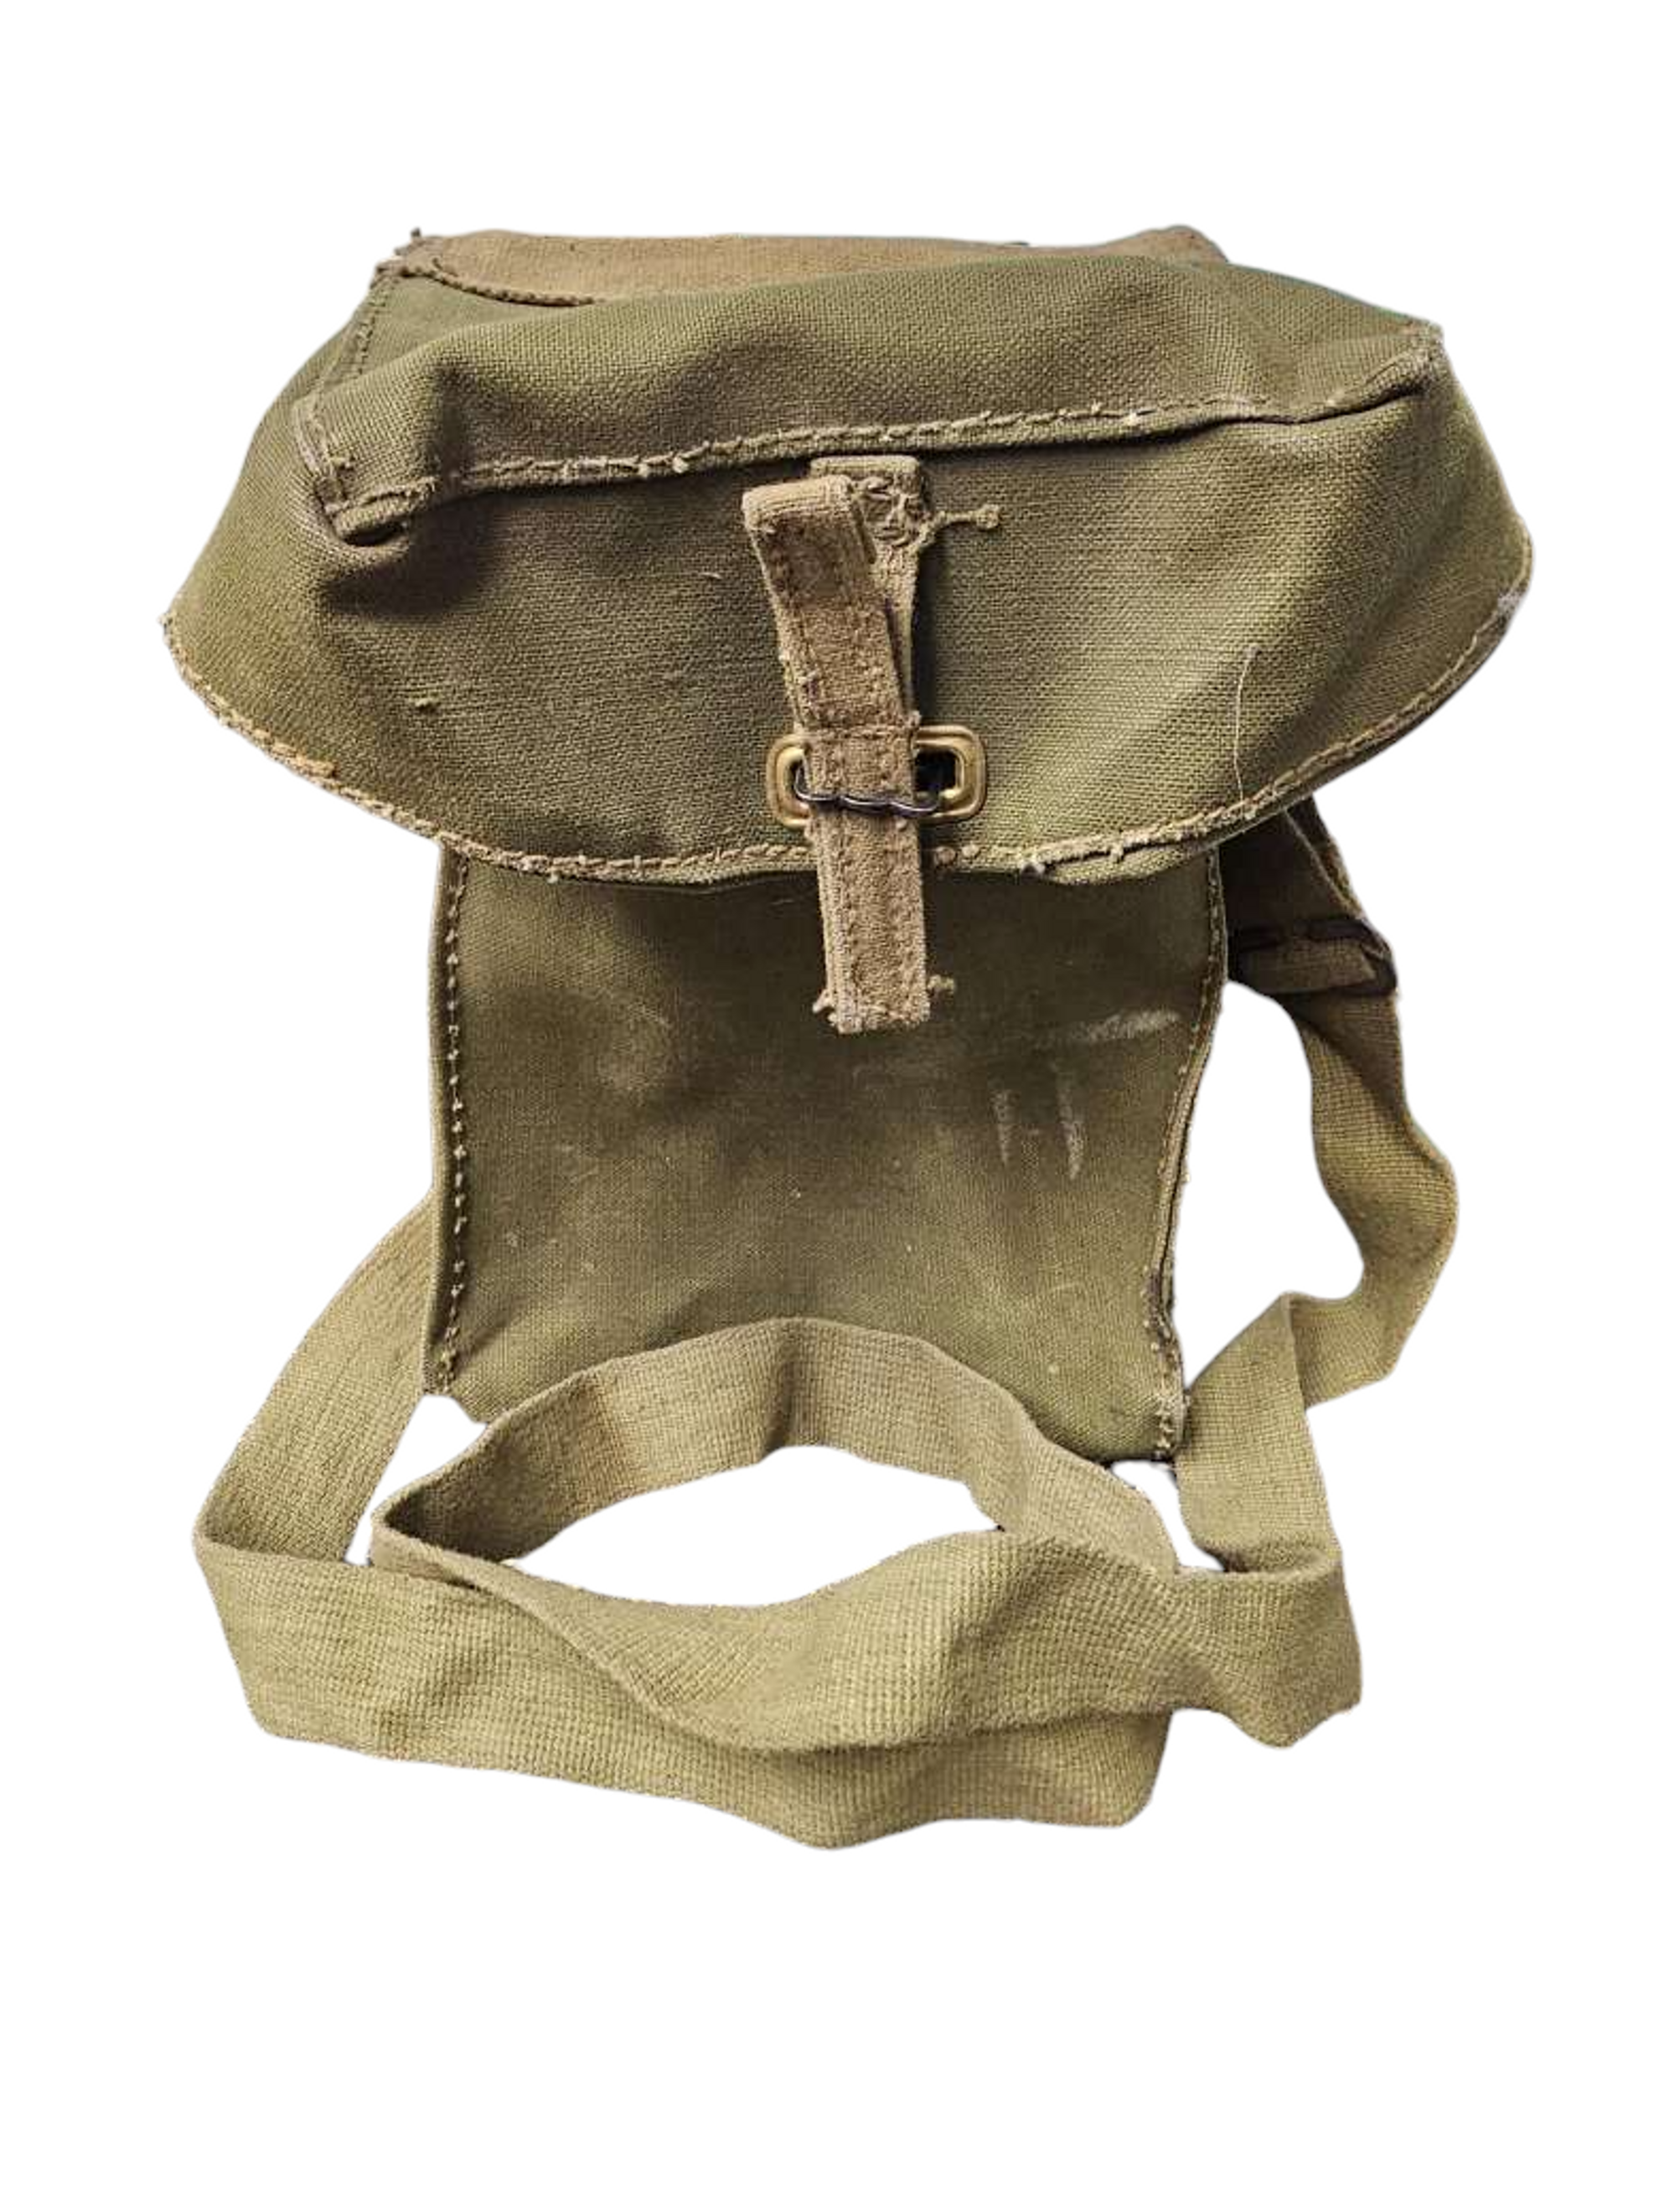 British Armed Forces MK1 Lightweight Gas Mask Bag